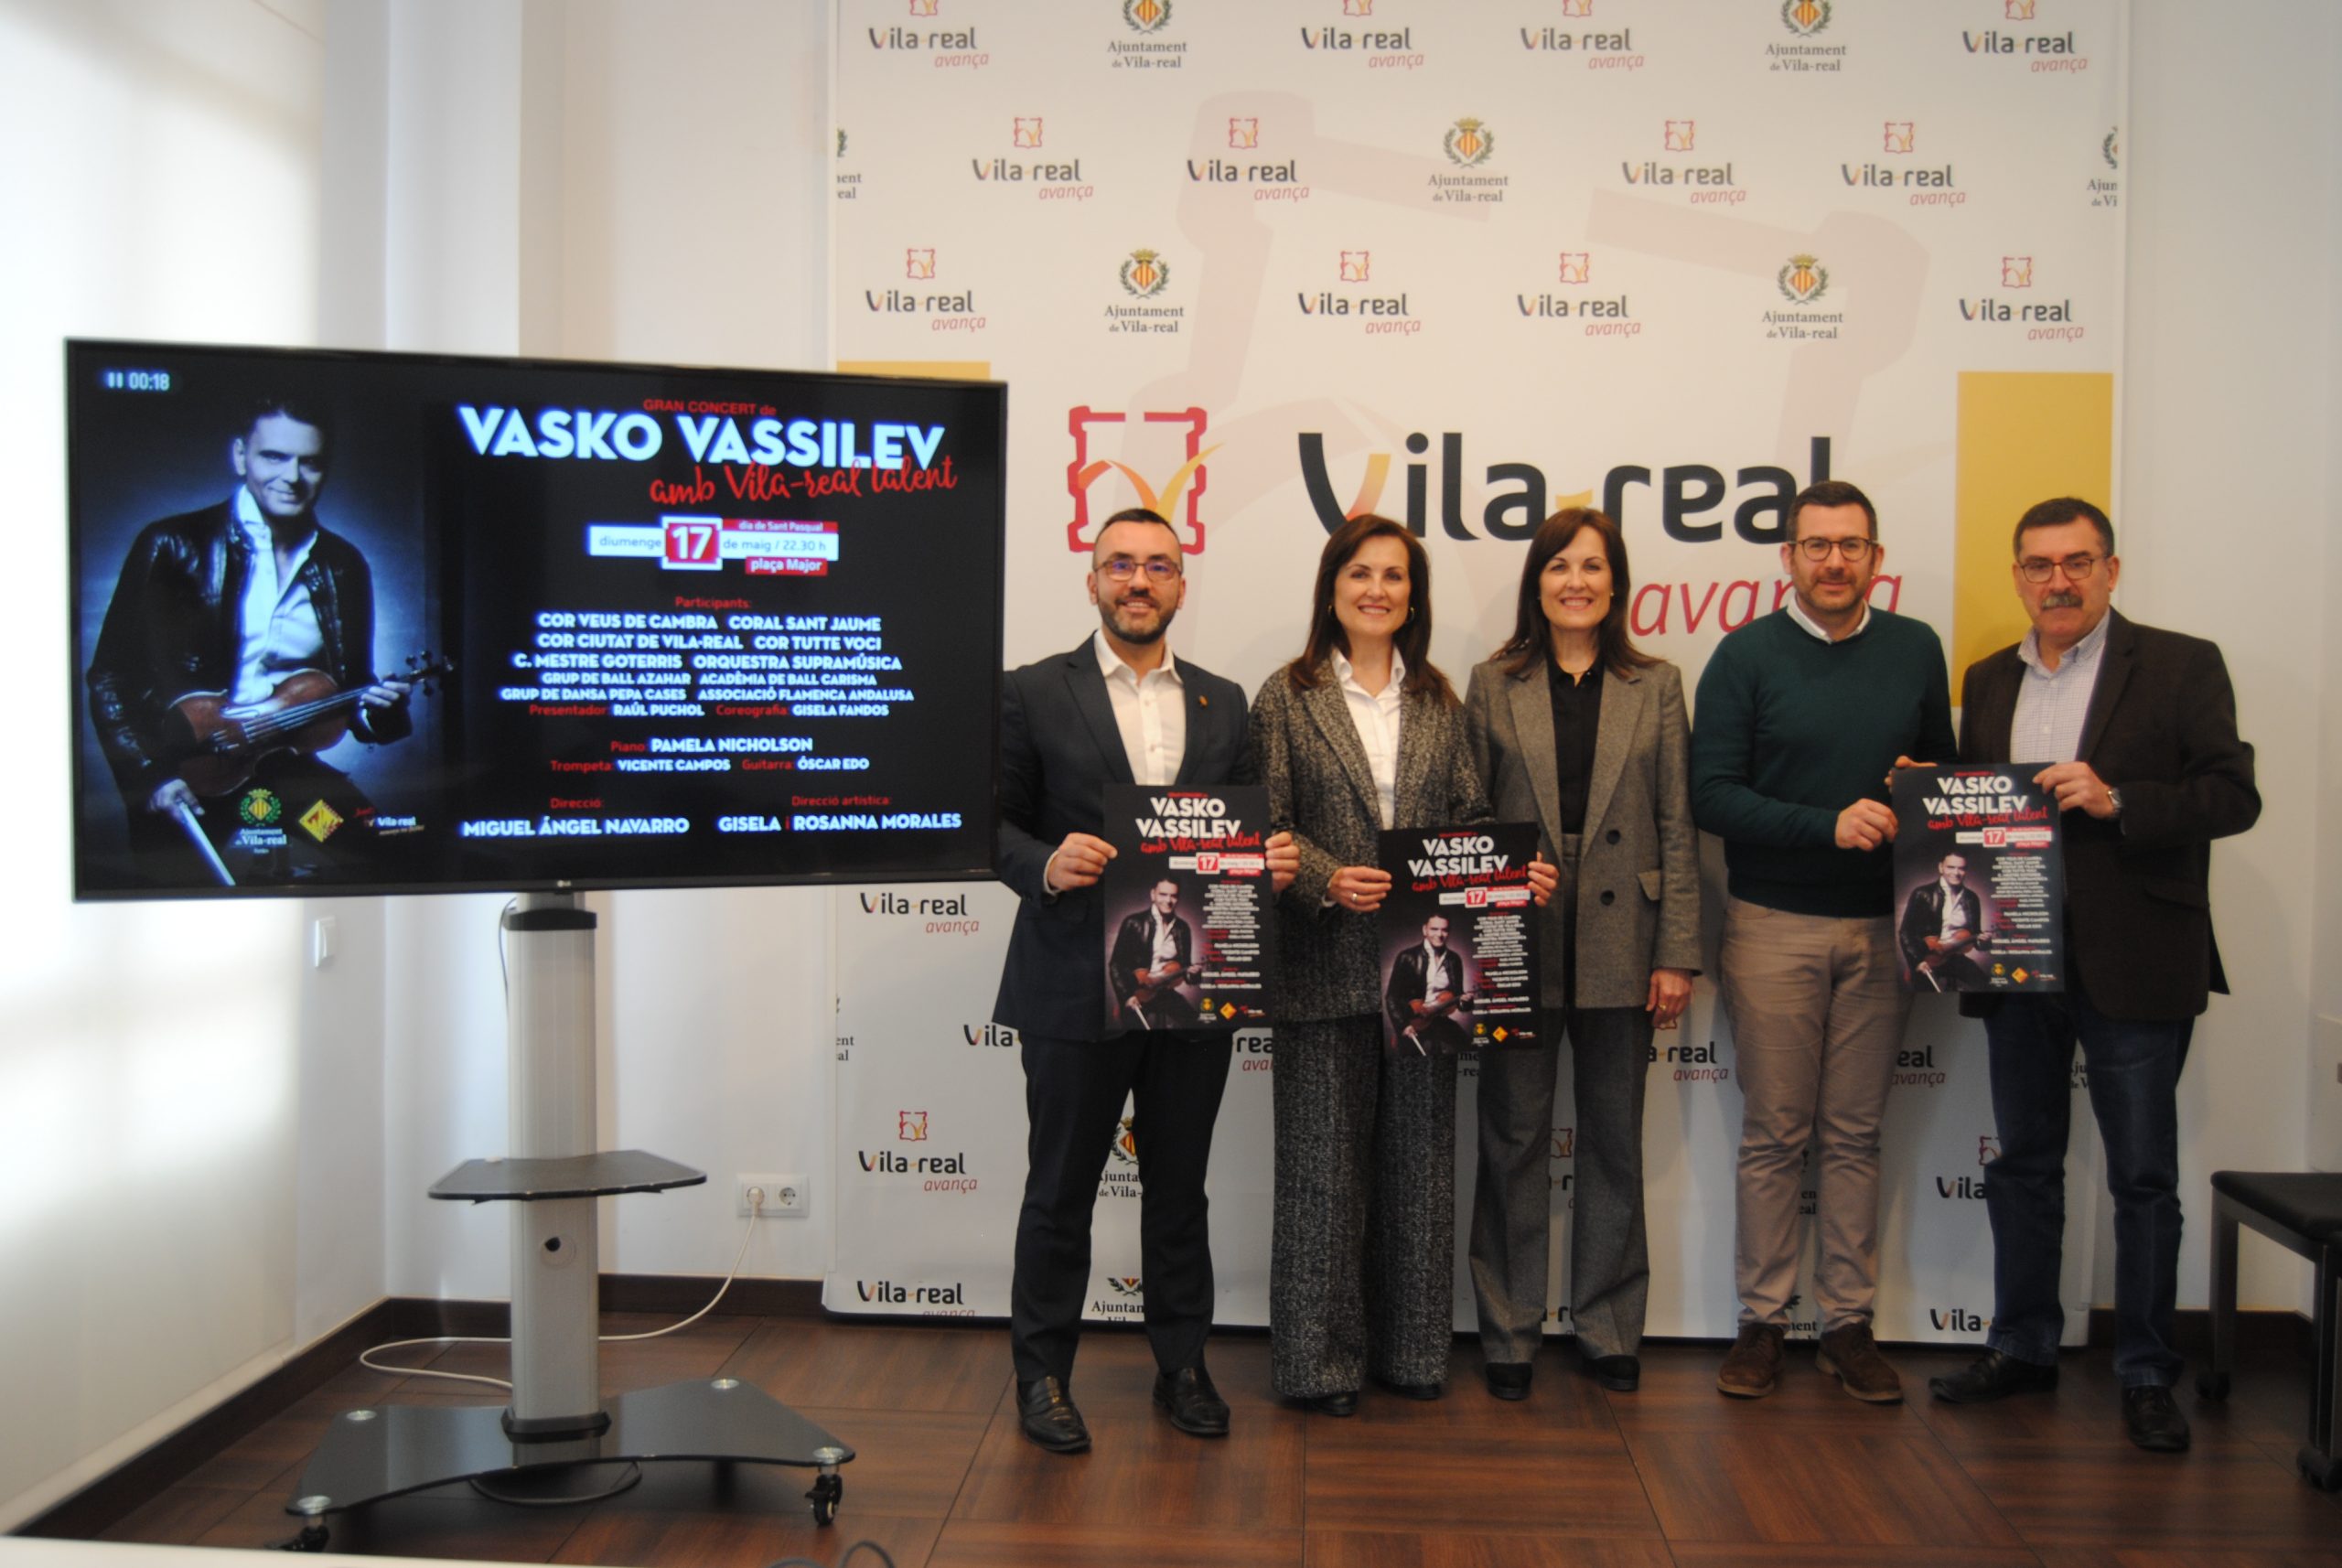 El violinista Vasko Vassilev estará en el primer Vila-real Talent junto a 175 músicos y artistas locales